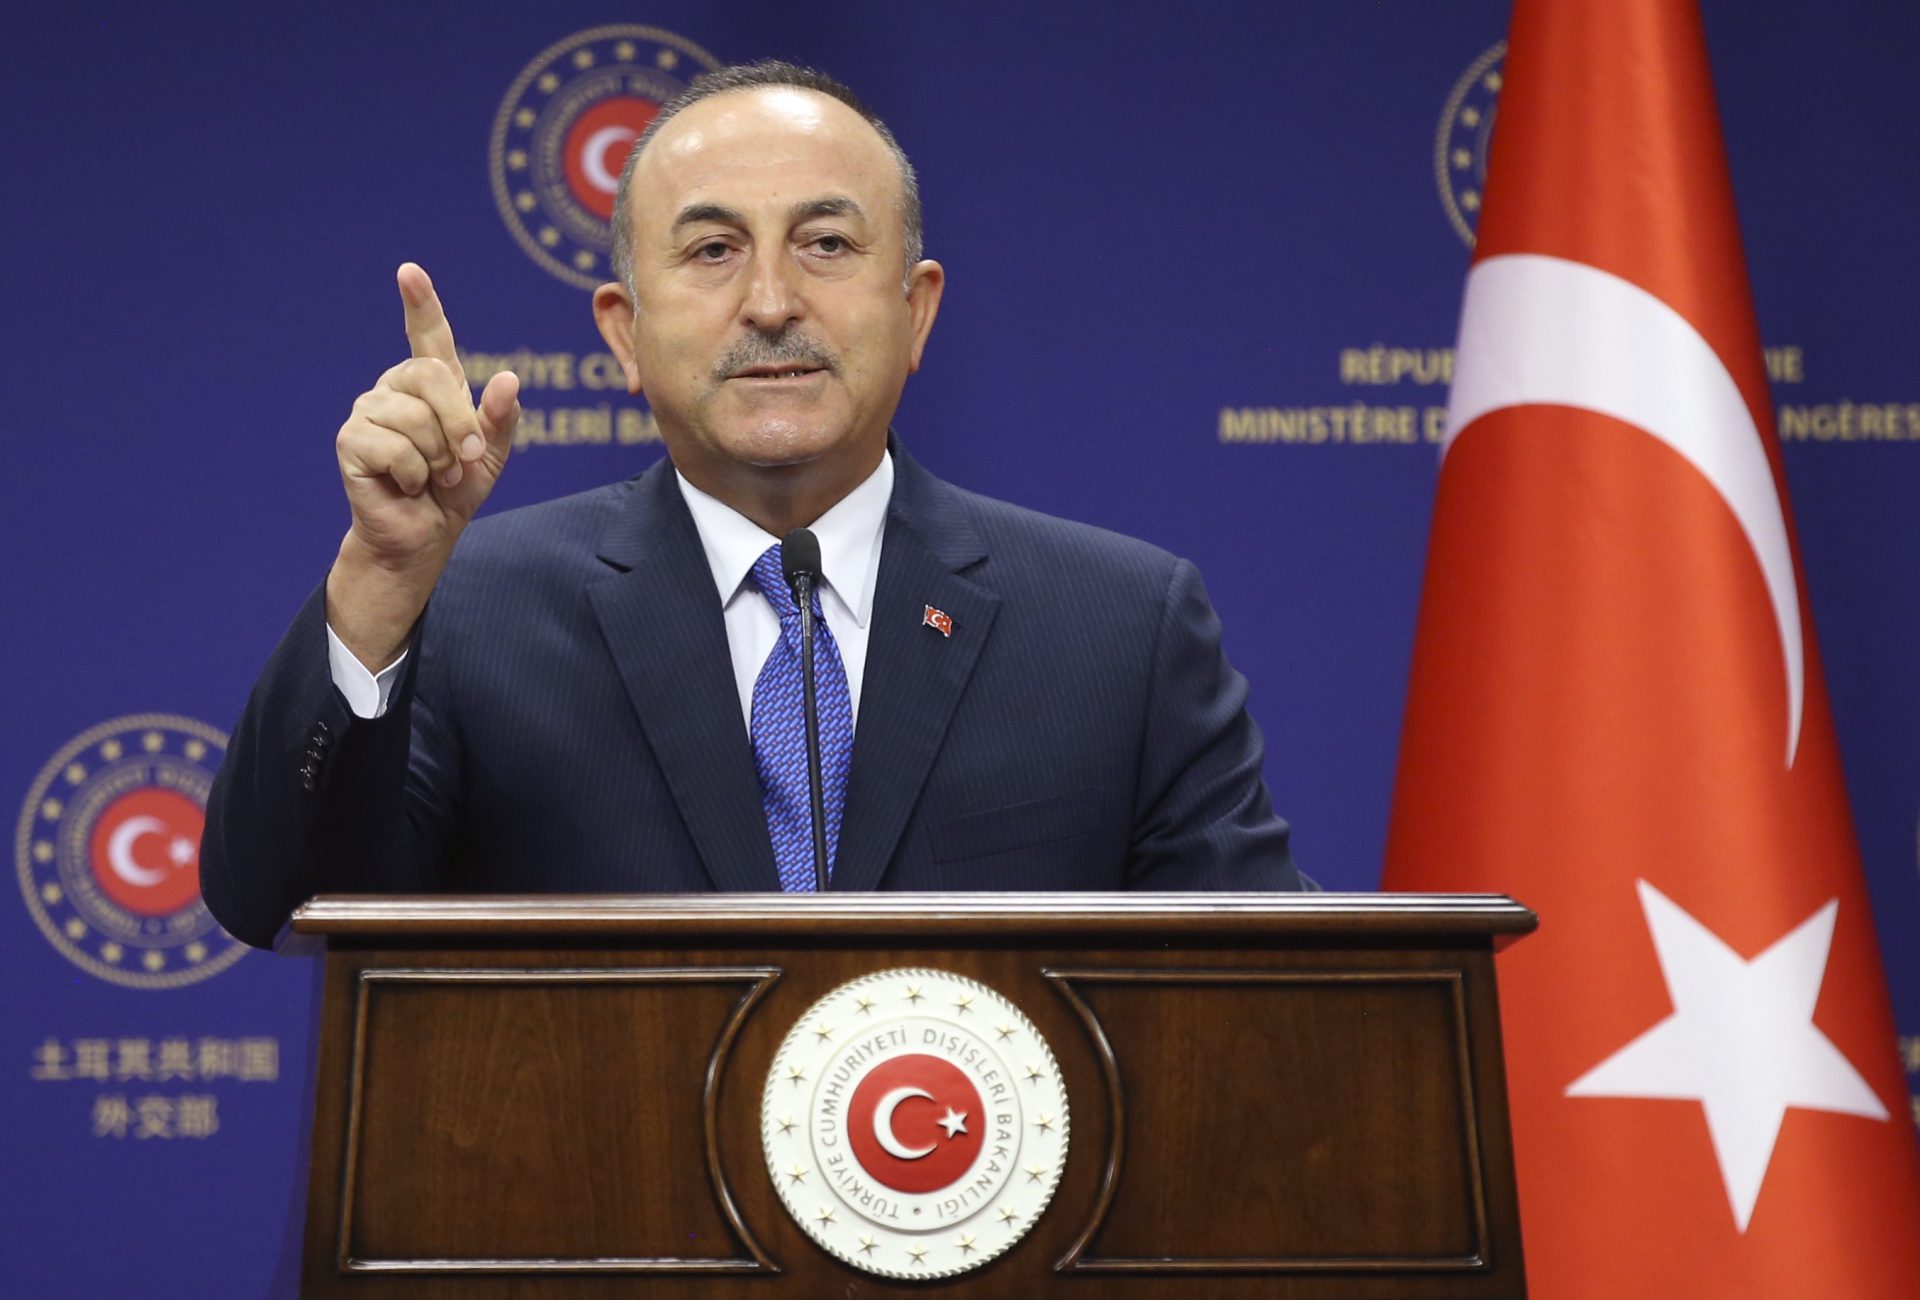 Ο Τούρκος υπουργός Εξωτερικών θα πραγματοποιήσει συνομιλίες με Τουρκοκύπριο ηγέτη